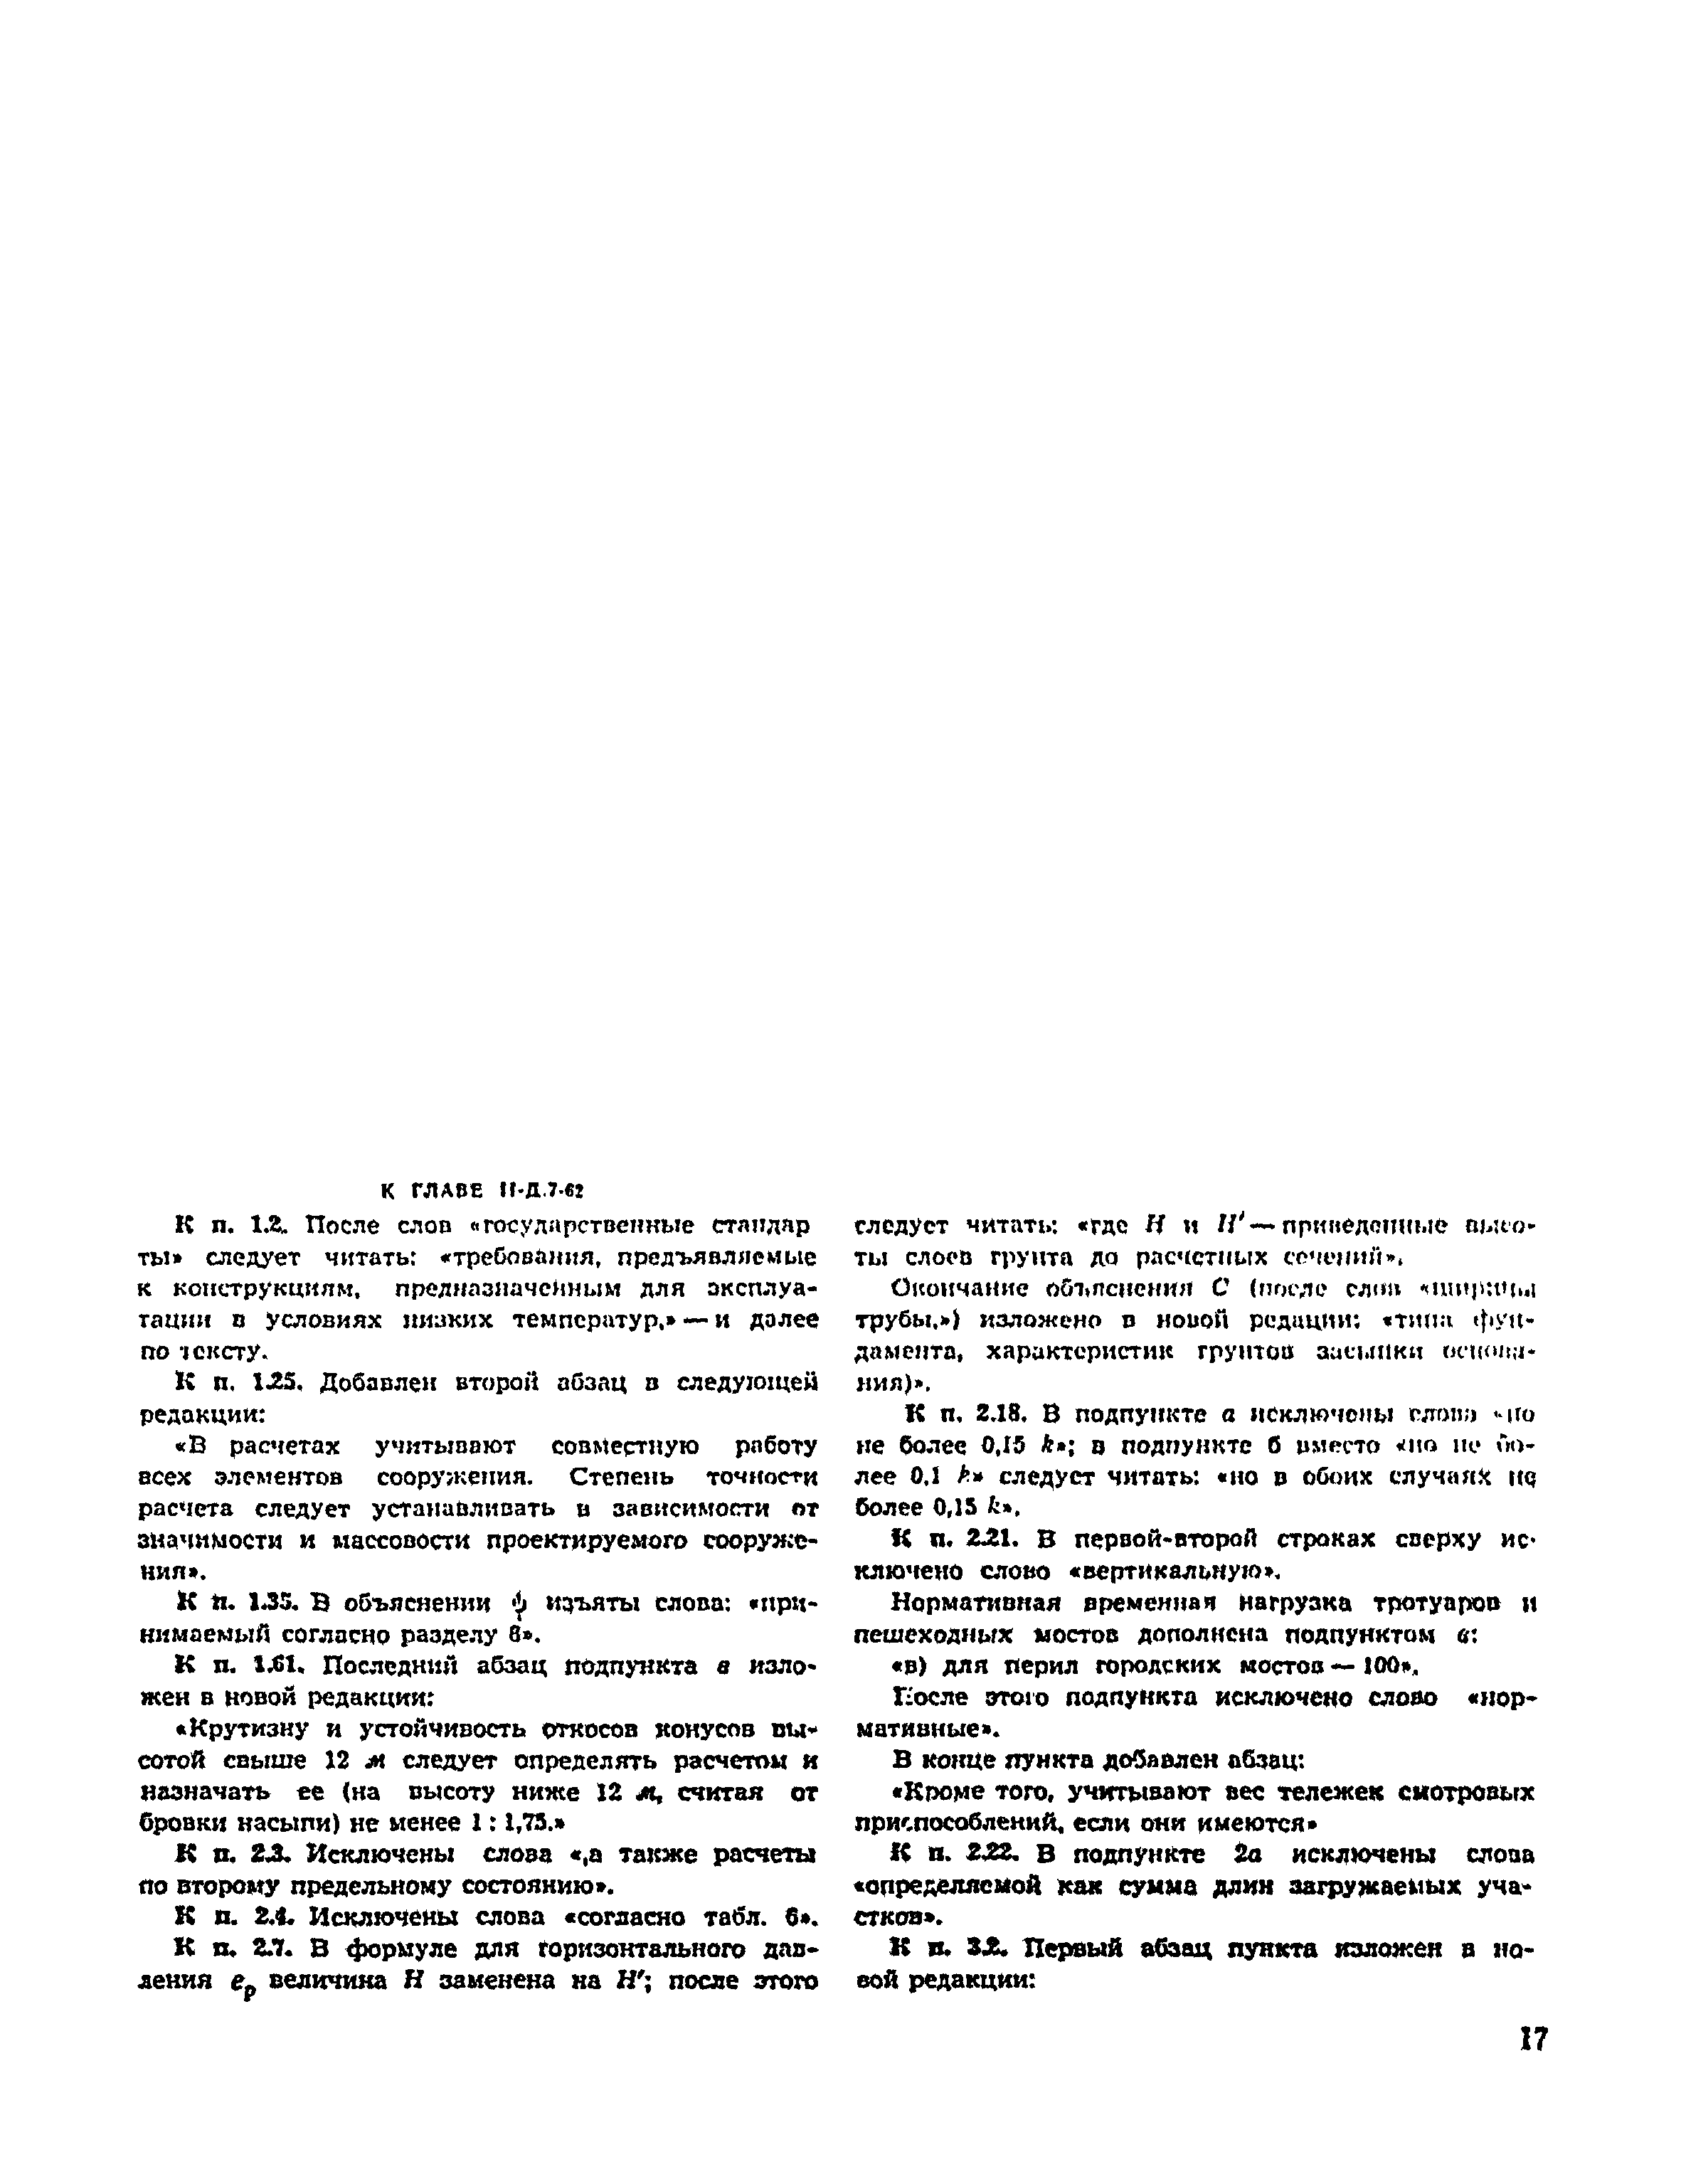 СНиП II-Д.7-62